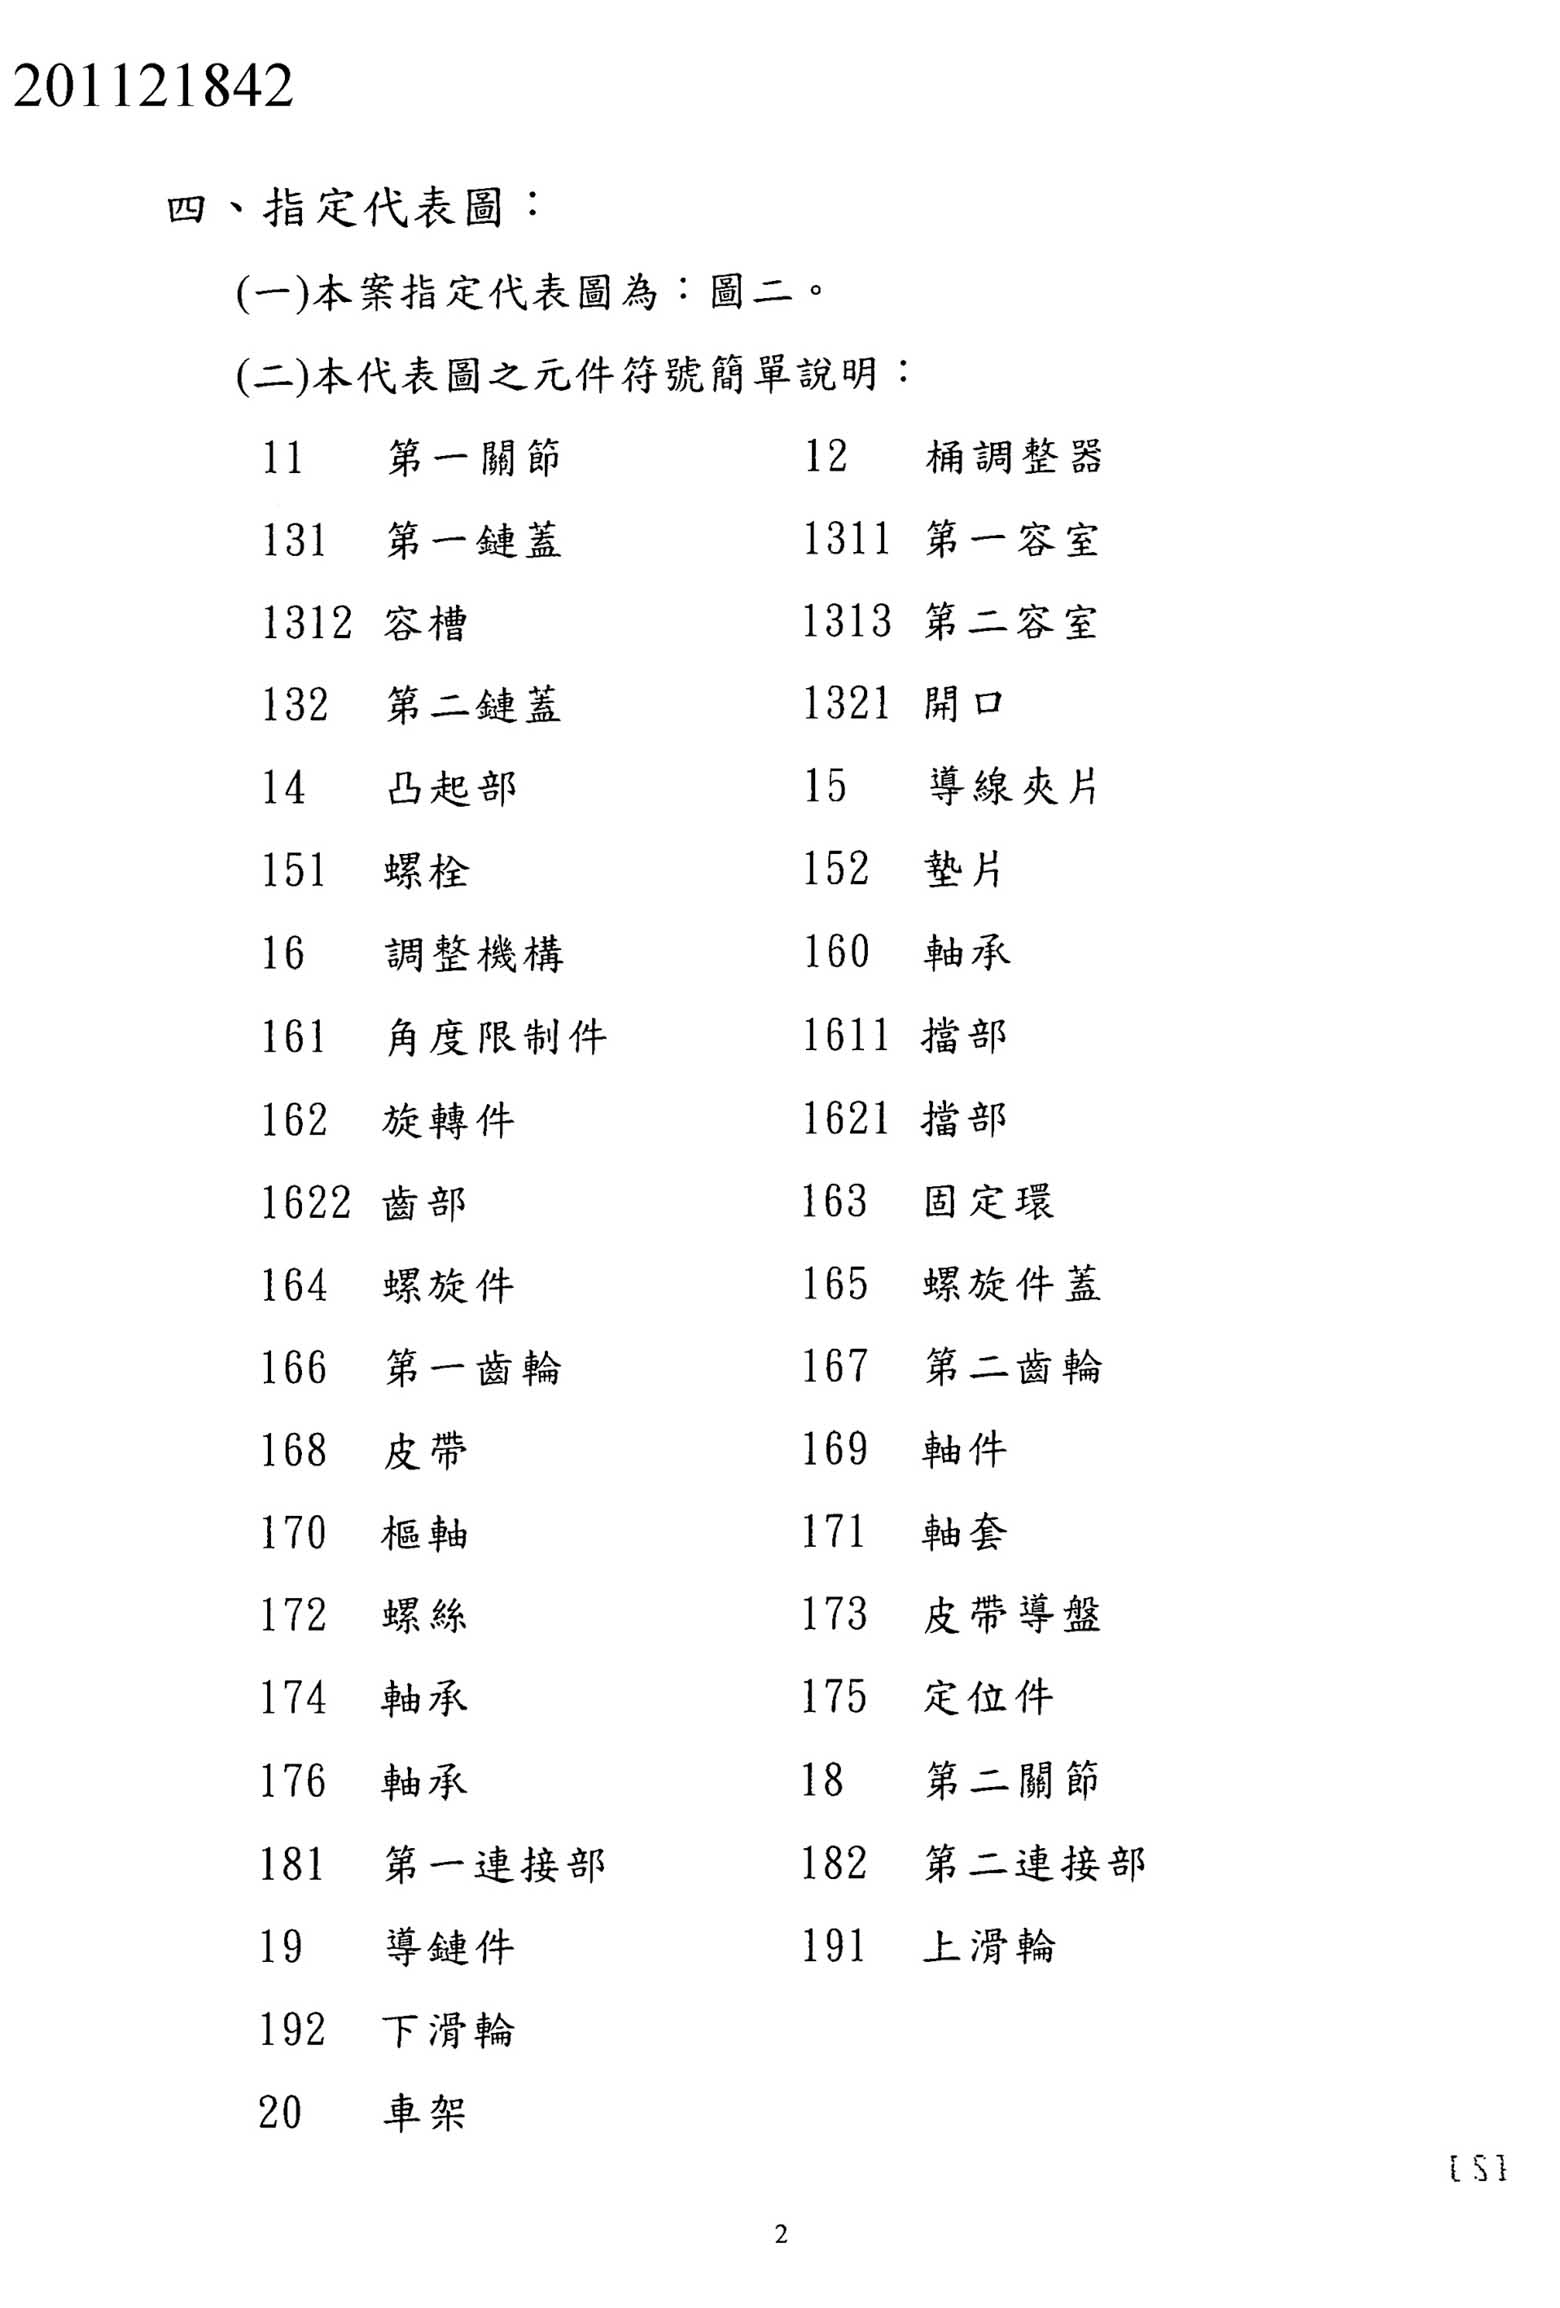 Taiwanese Patent 201121842 - FSA scan 35 main image